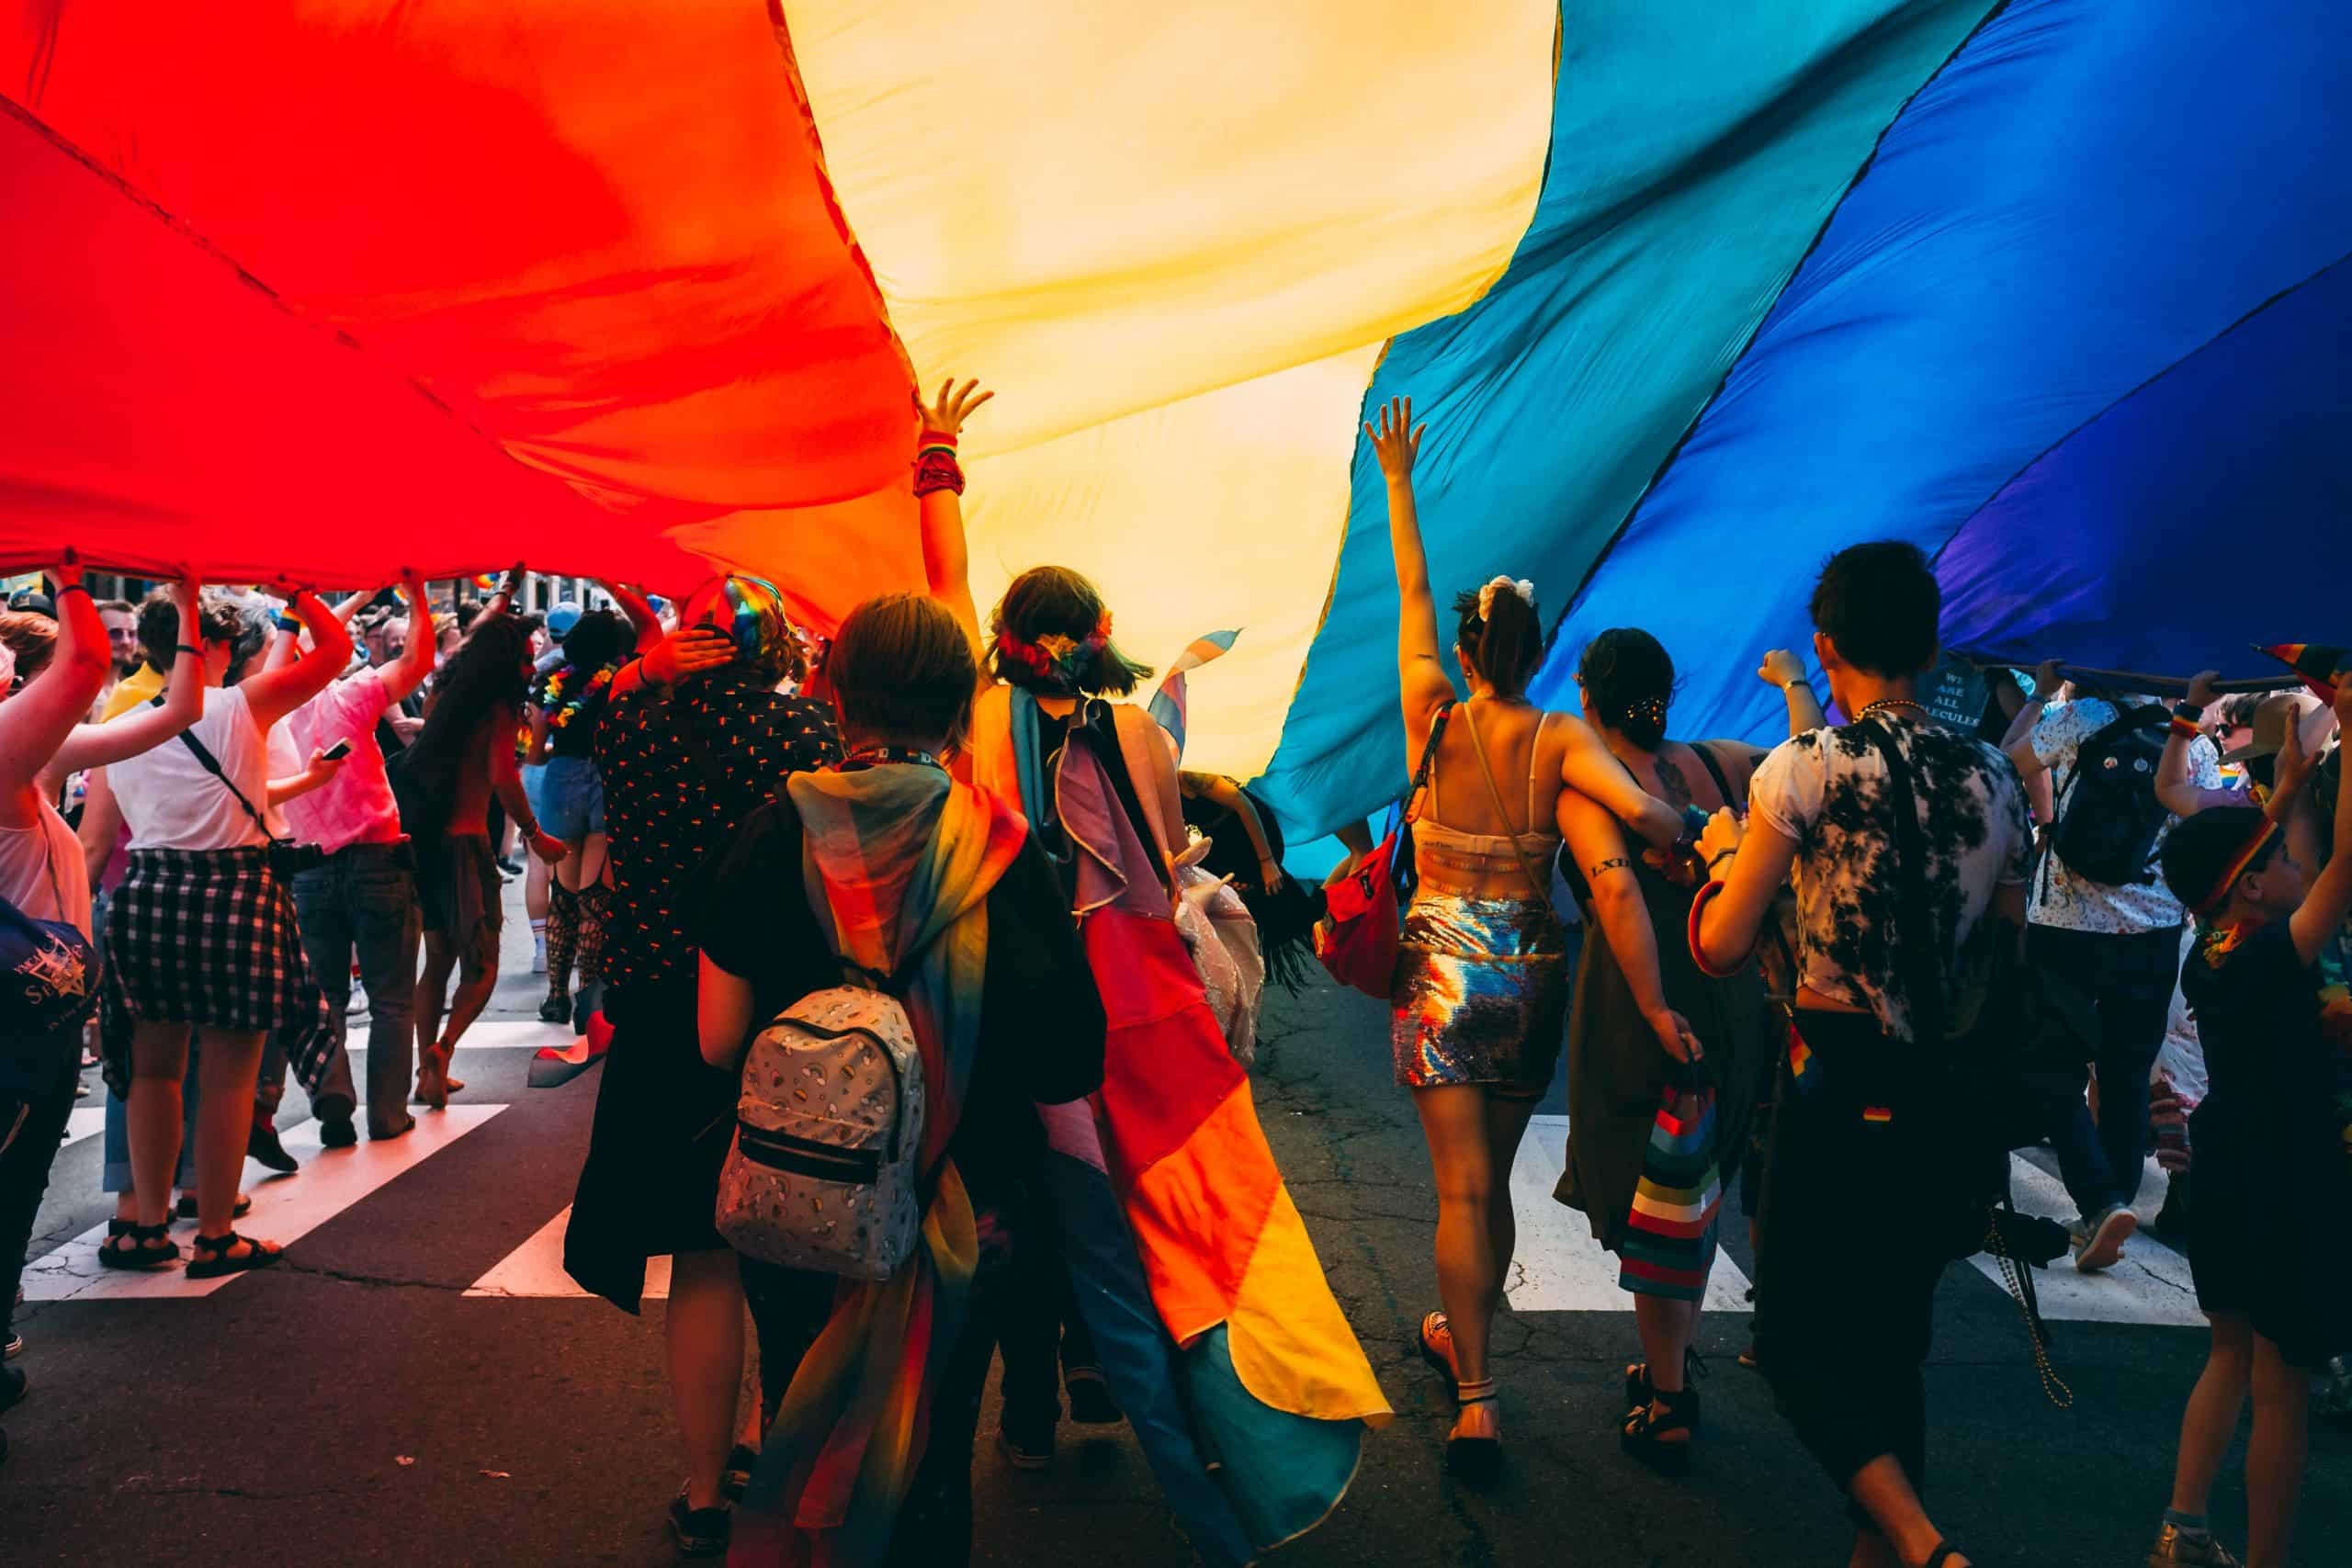 Semana Internacional da Luta Contra a LGBTfobia! Motivos para comemoração, orgulho e respeito